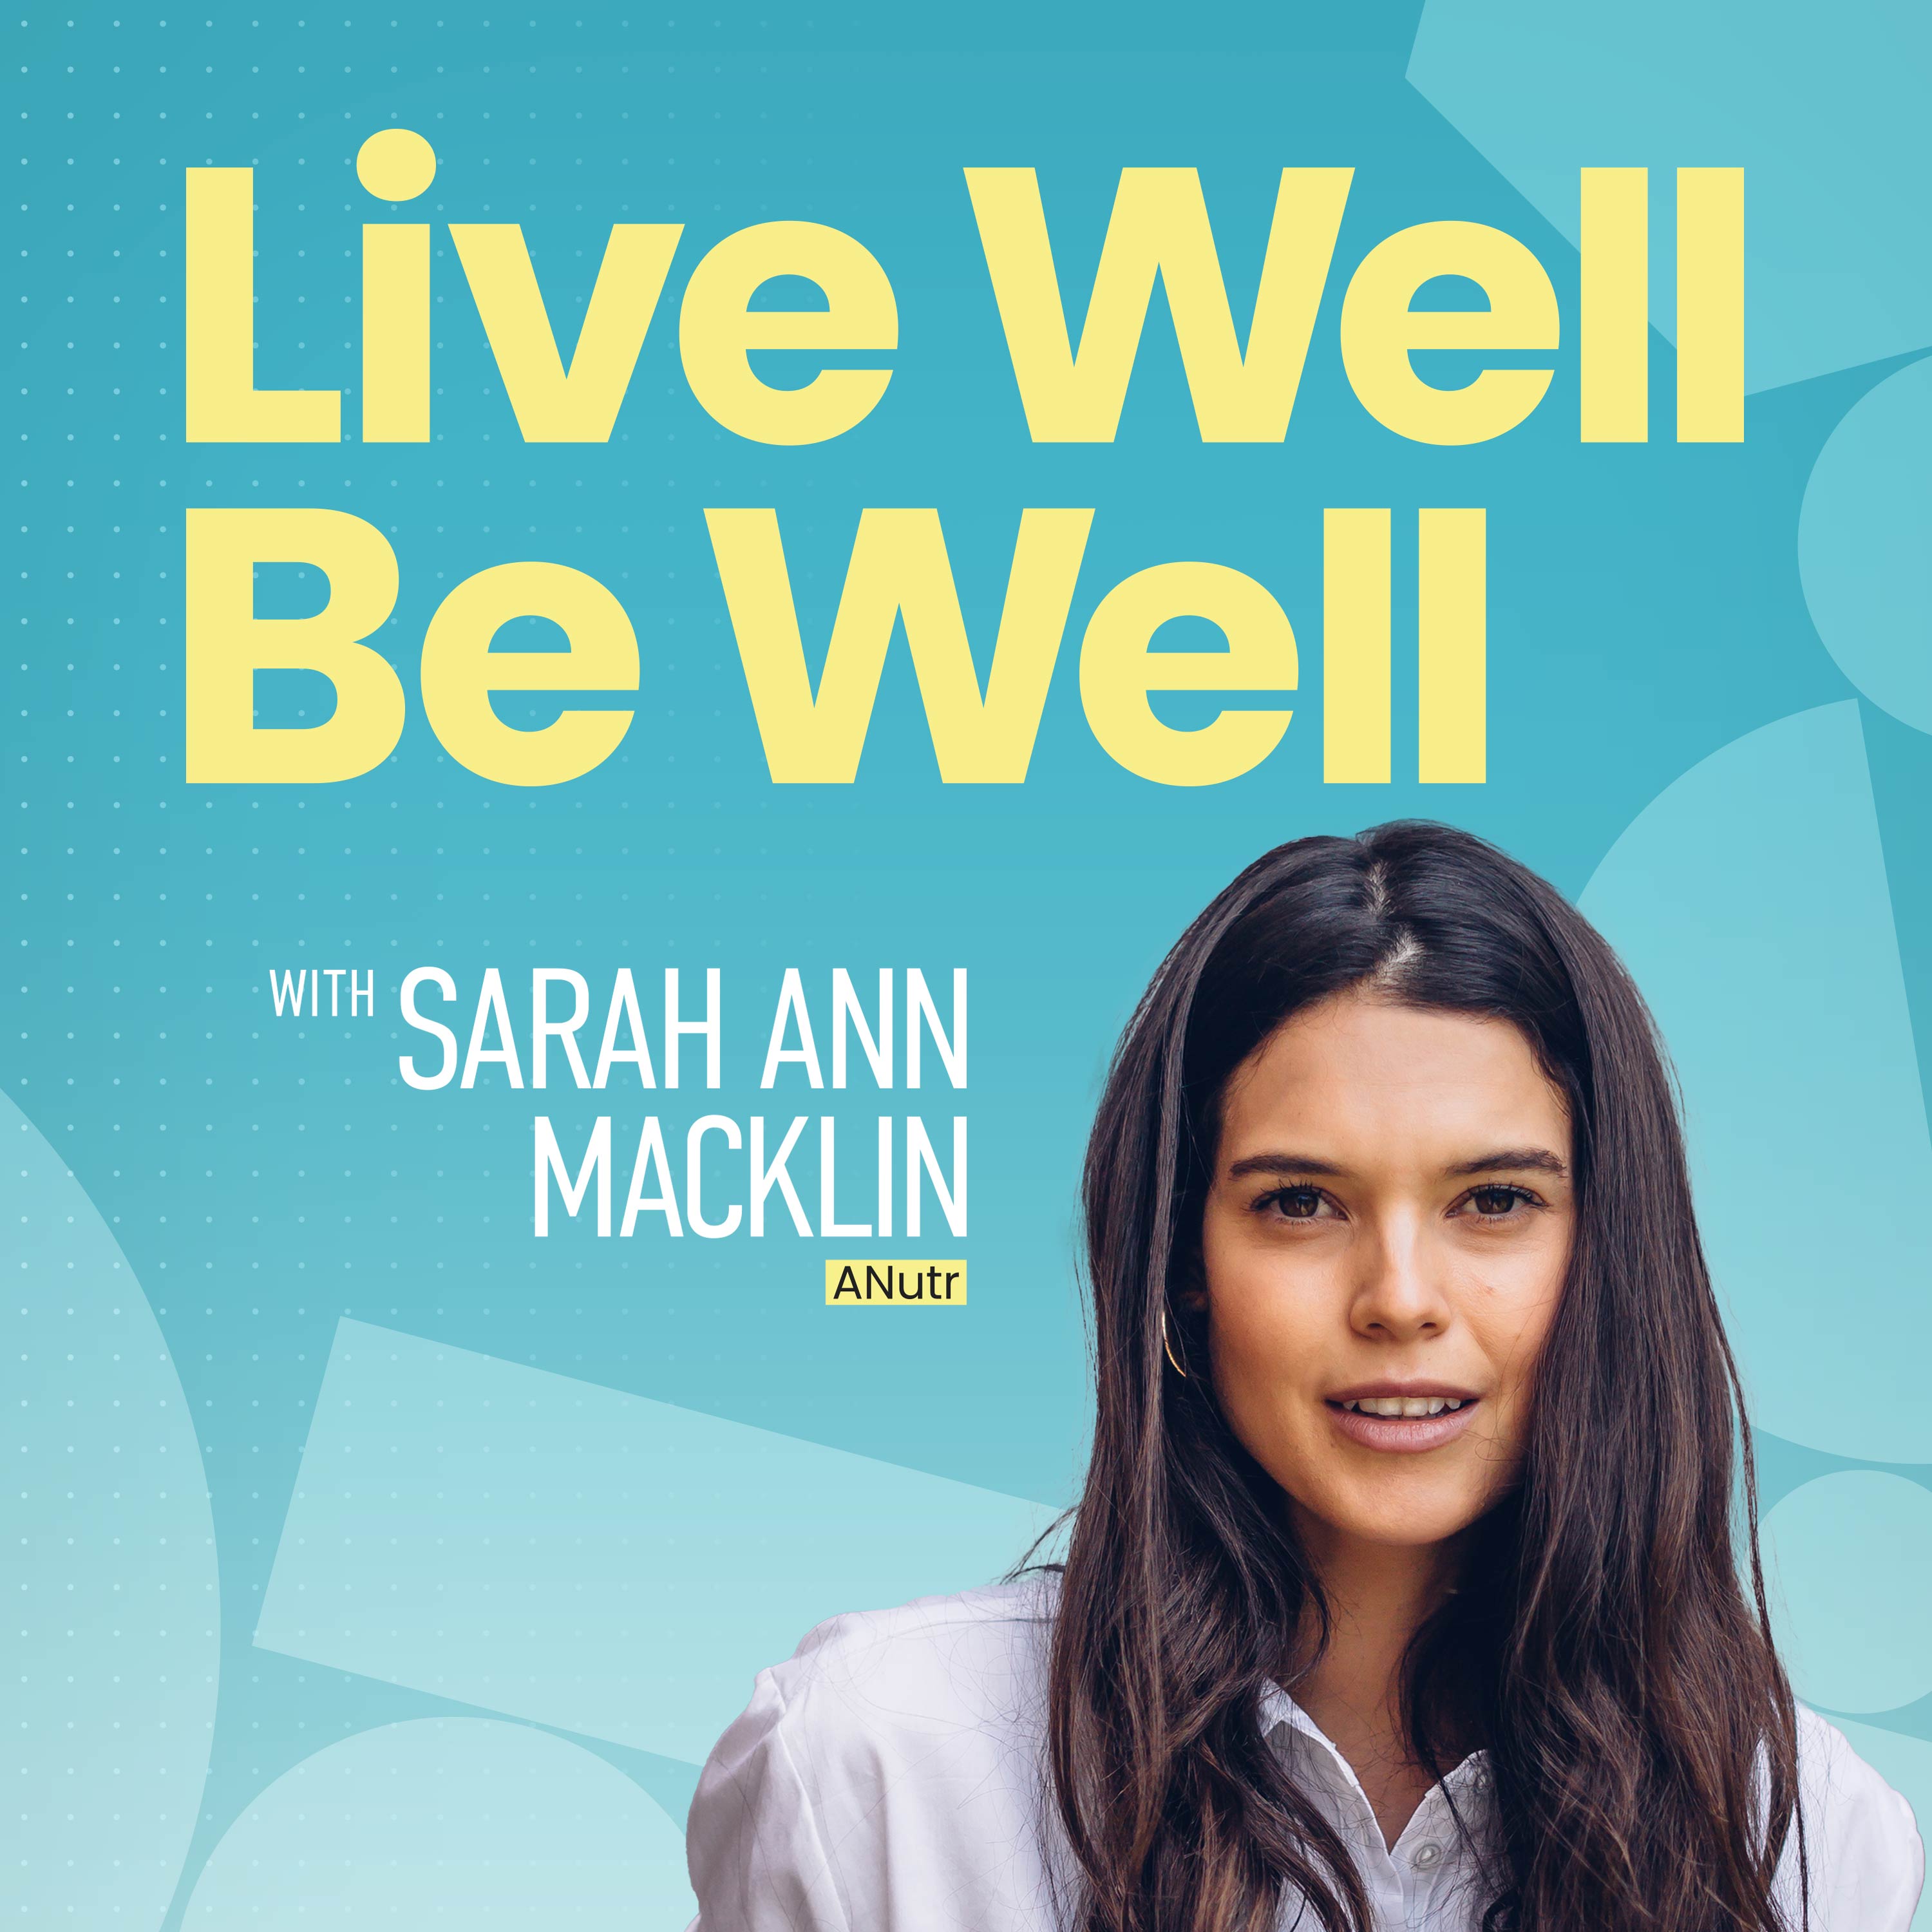 Live Well Be Well with Sarah Ann Macklin | Health, Lifestyle, Nutrition:Sarah Ann Macklin